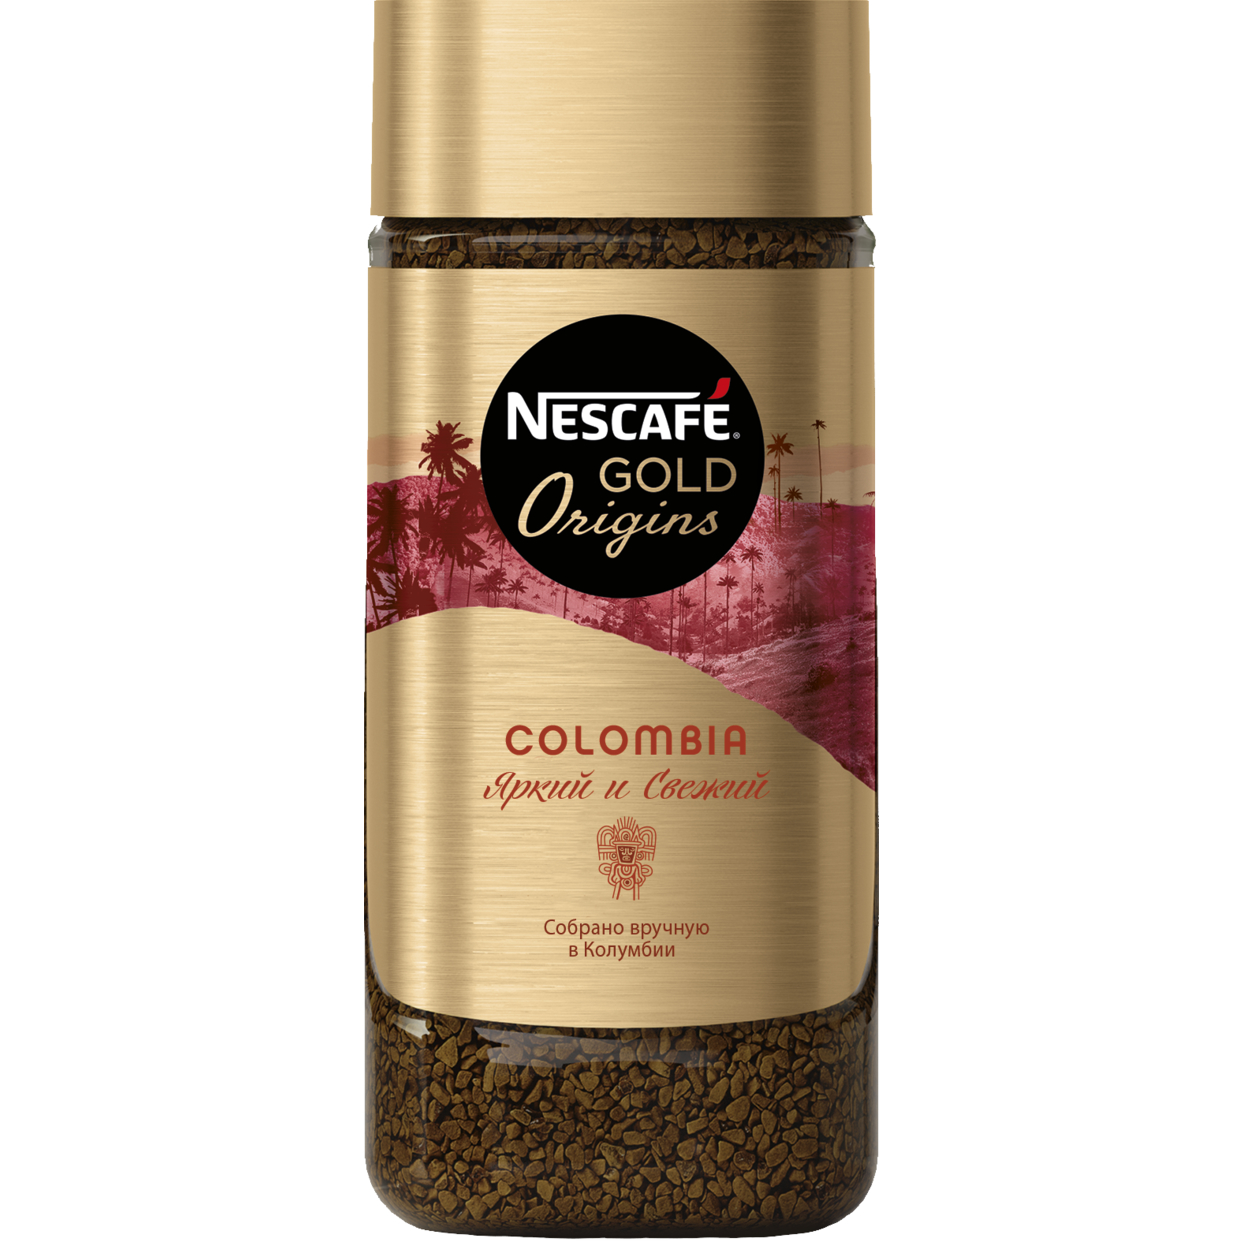 Кофе натуральный растворимый сублимированный NESCAFE GOLD Origins Colombia, 85 гр по акции в Пятерочке